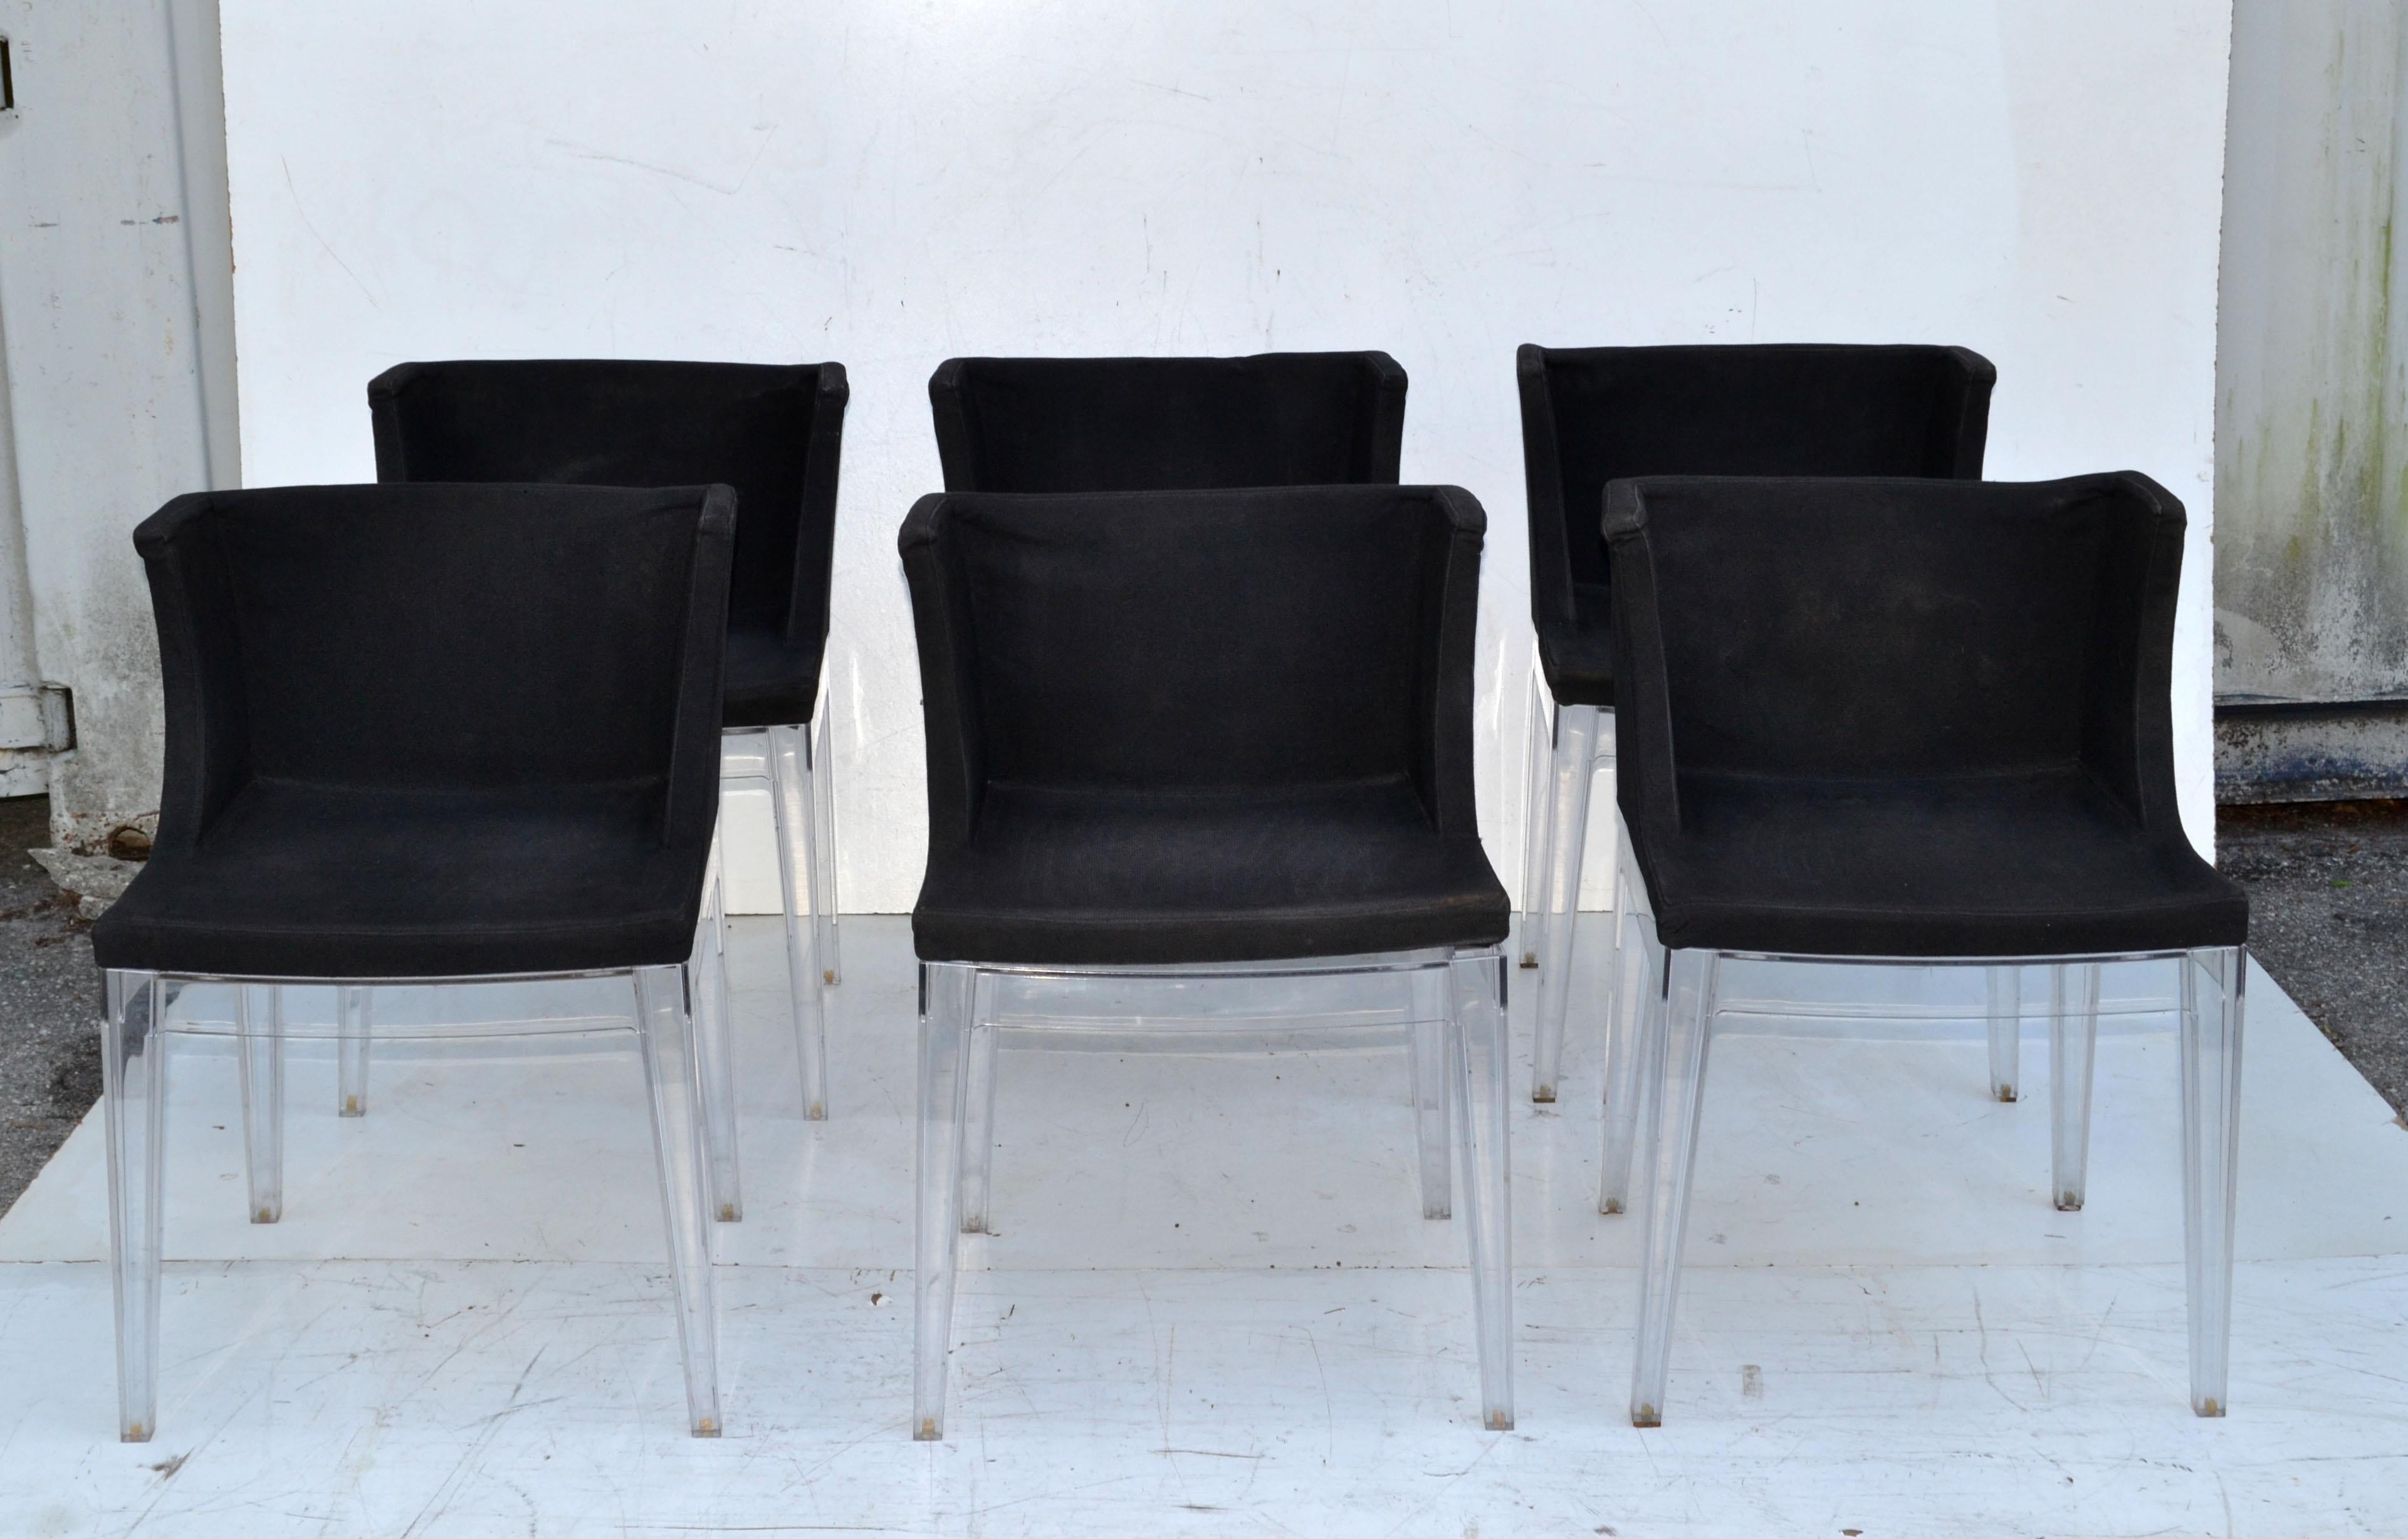 6er-Set Mademoiselle Esszimmer- oder Sessel im originalen schwarzen Baumwollbezug und mit transparentem Lucite-Rahmen.
Entworfen von Philippe Starck und hergestellt in Italien von Kartell in den 1970er Jahren.
Alles im Originalzustand mit